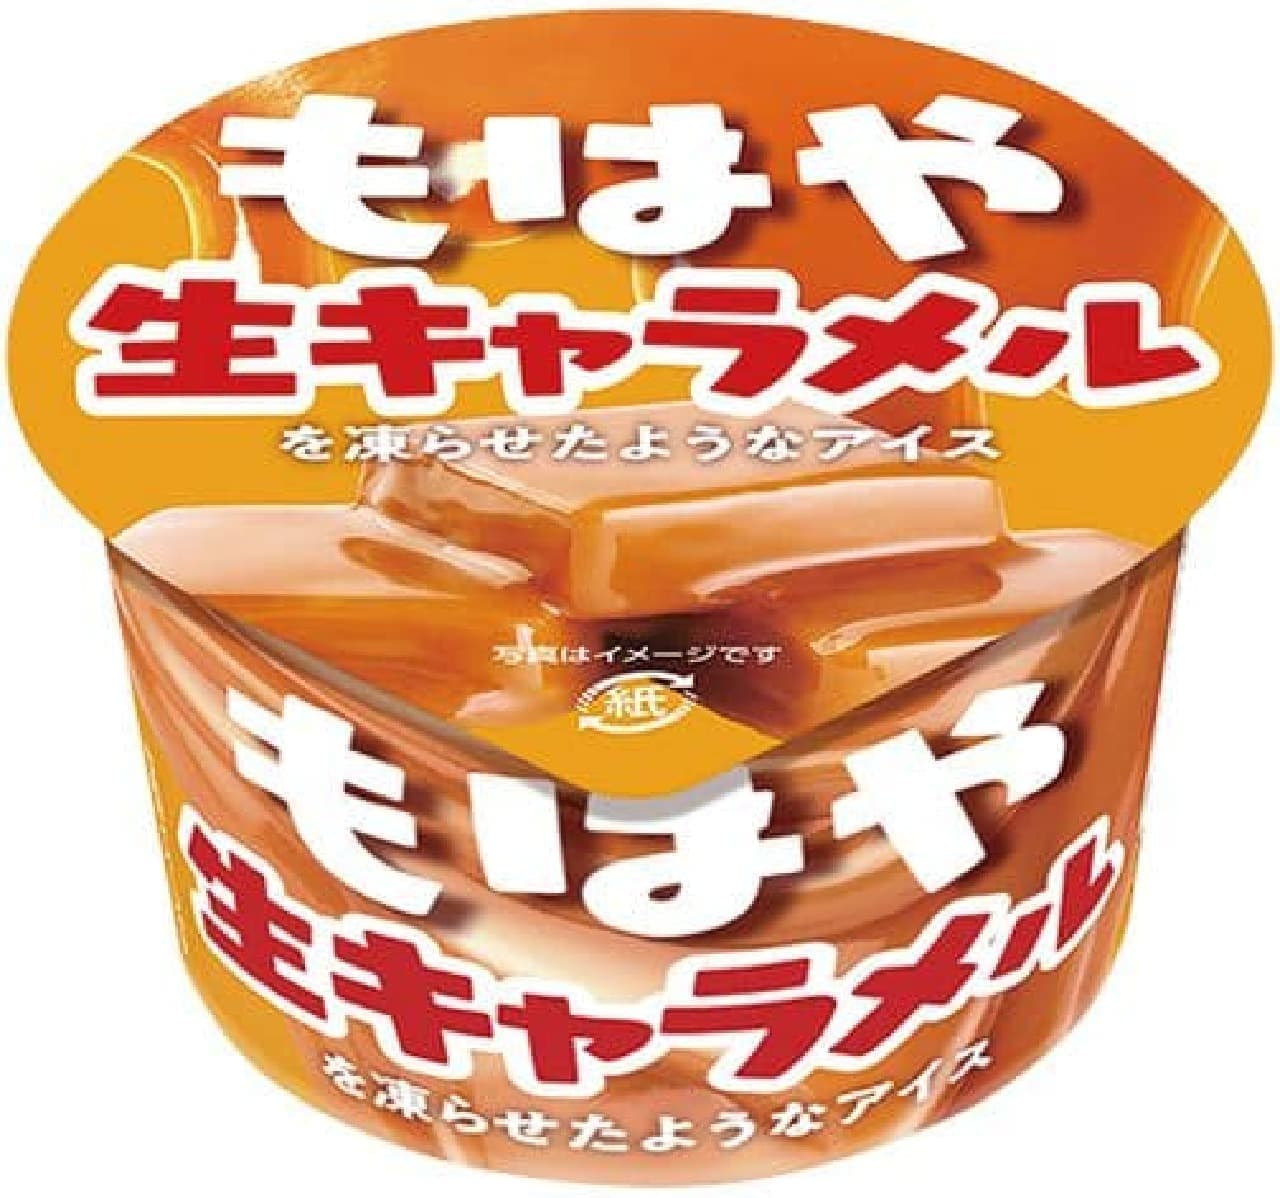 FamilyMart "Akagi: Ice cream that no longer looks like frozen fresh caramel"